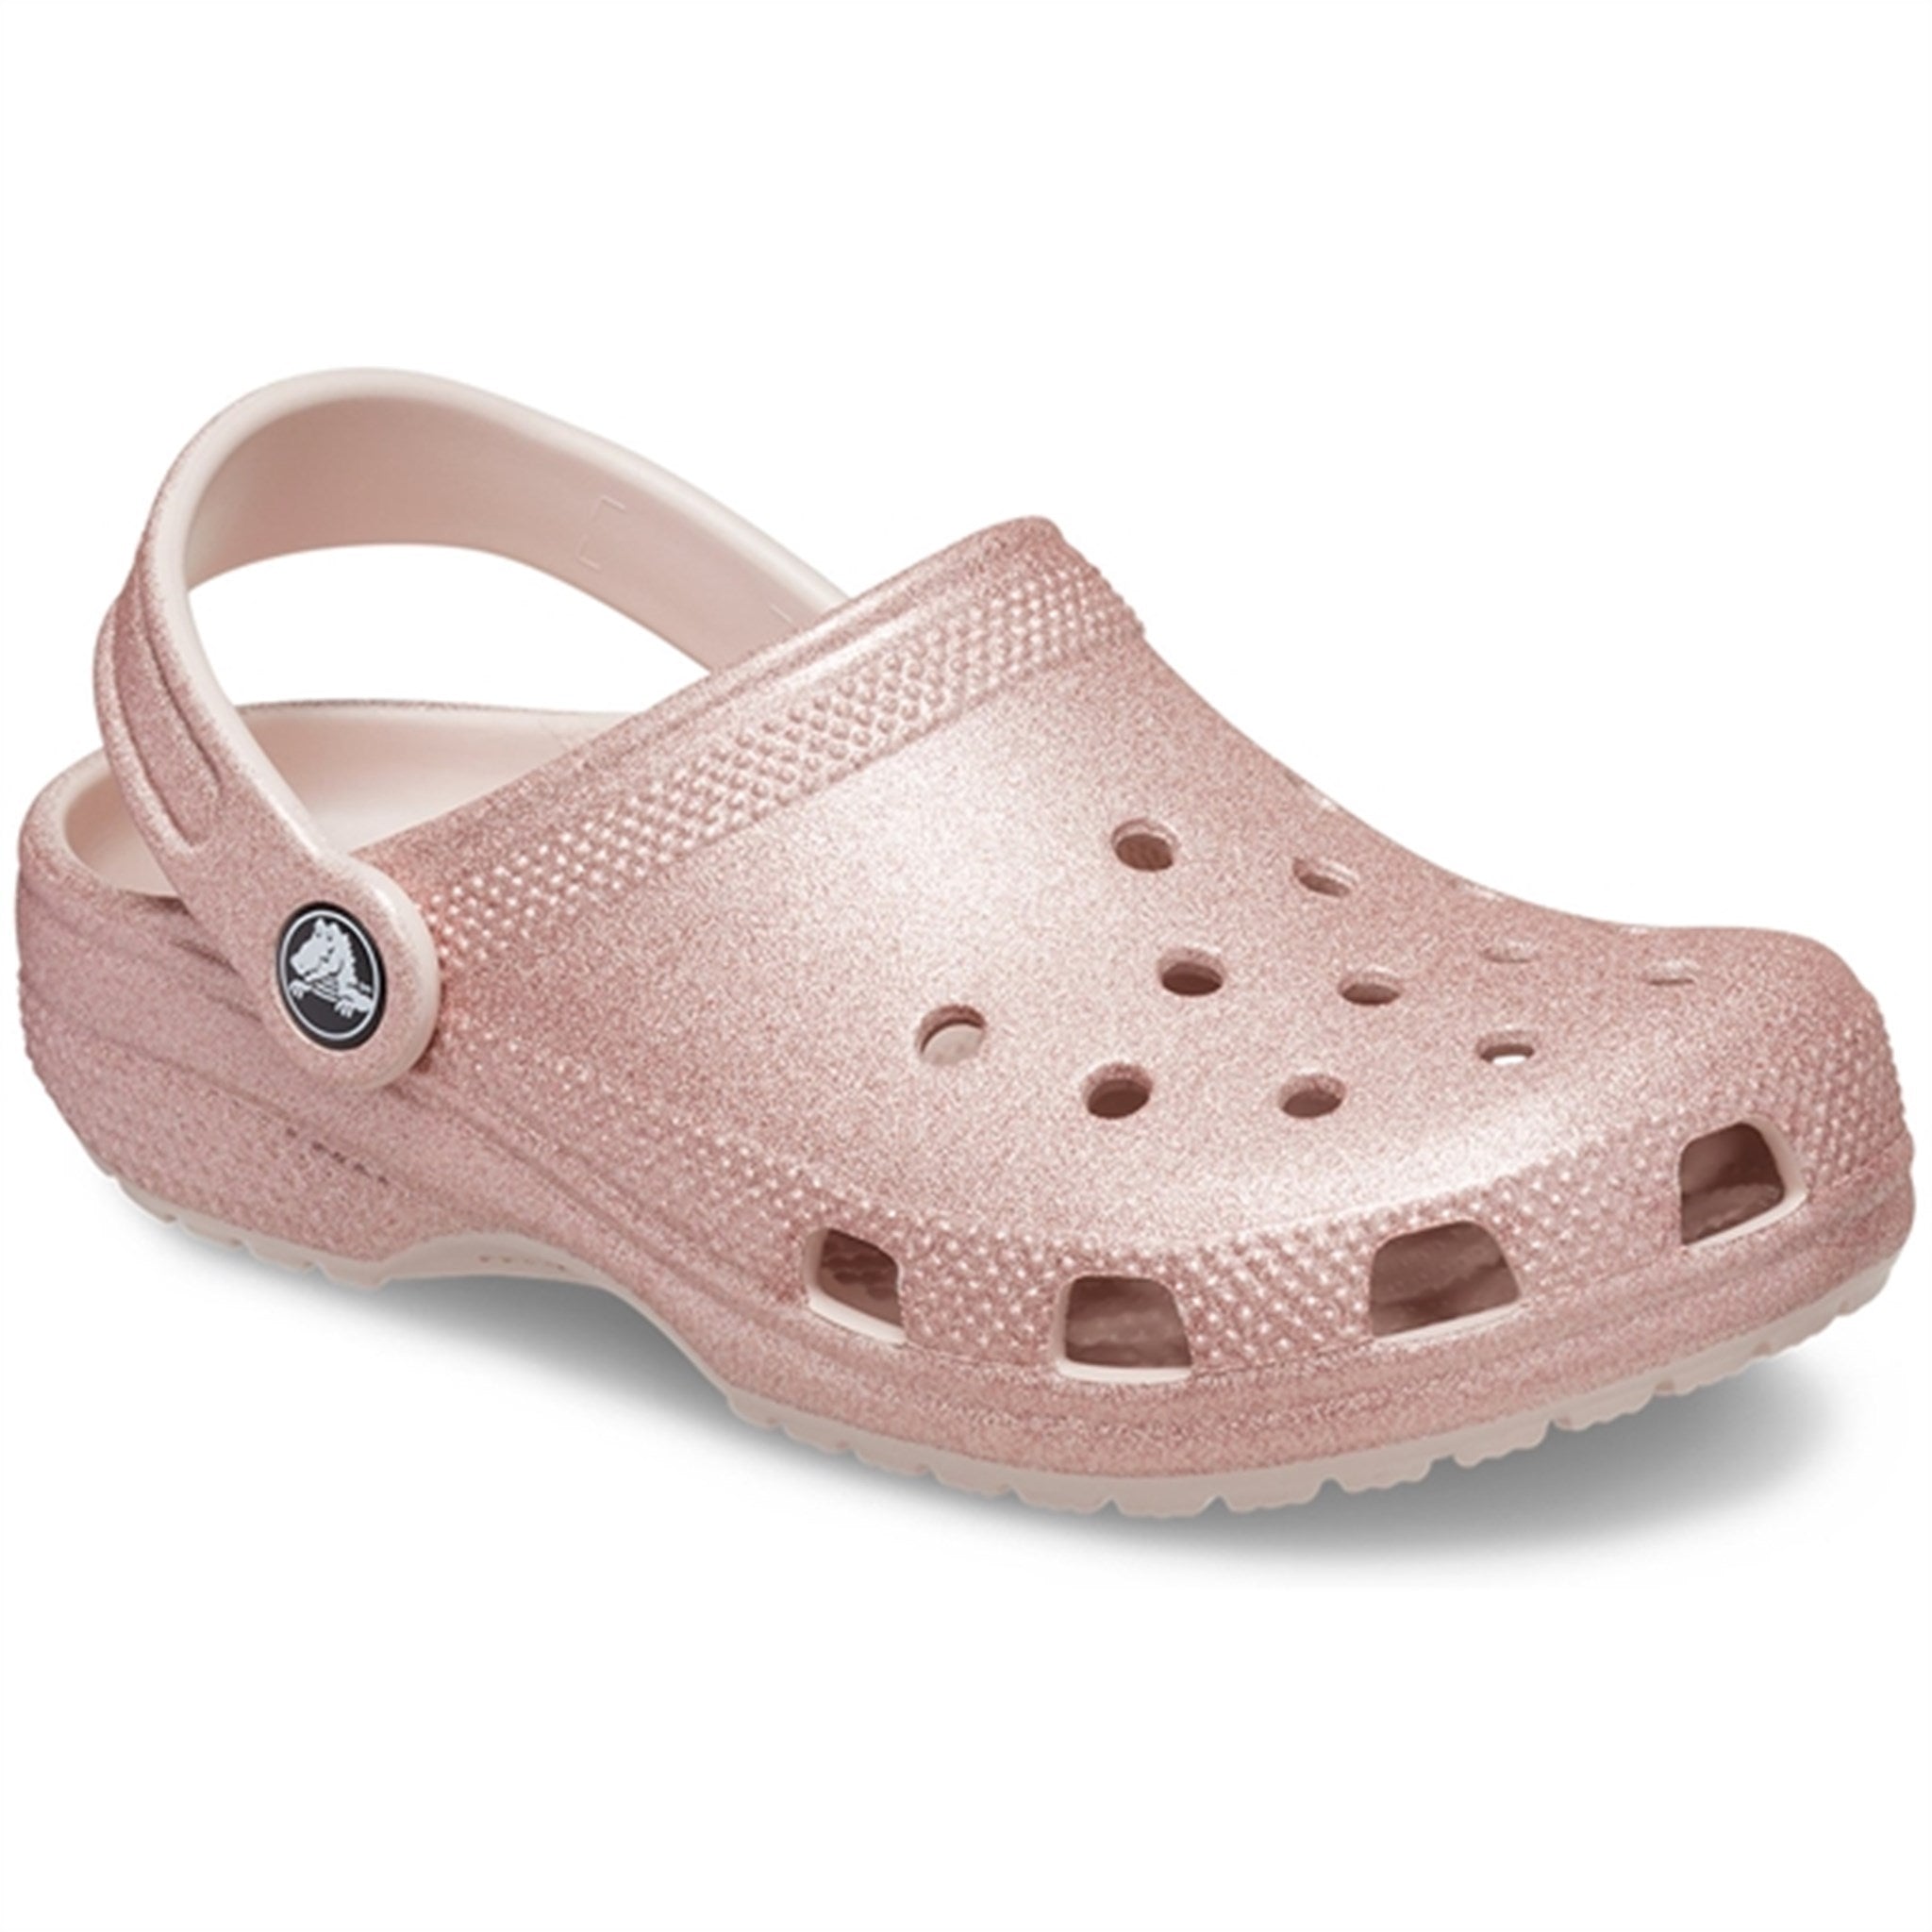 踏入舒适与时尚并存的世界，穿上 Crocs 经典闪闪发光凉鞋，石英色闪光 7